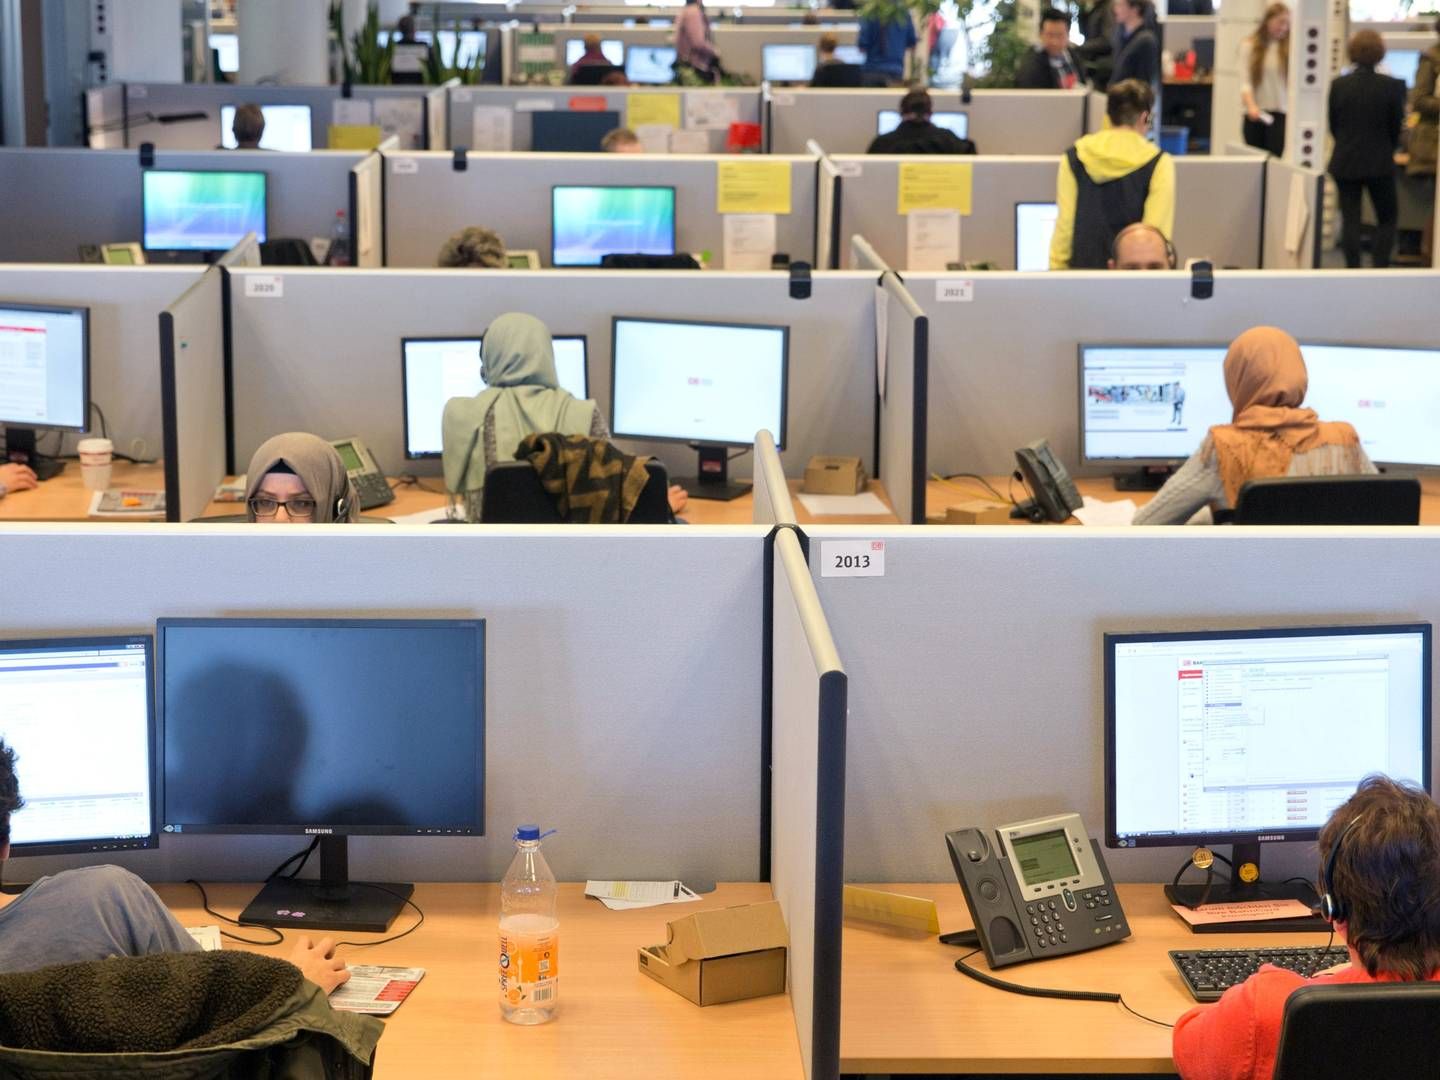 Mødebookere, der arbejder i et callcenter er et vigtigt element i pensionsmæglervirksomheden APC' forretningskoncept. Arkivfoto: Jörg Carstensen/AP/Ritzau Scanpix | Foto: Jörg Carstensen/AP/Ritzau Scanpix